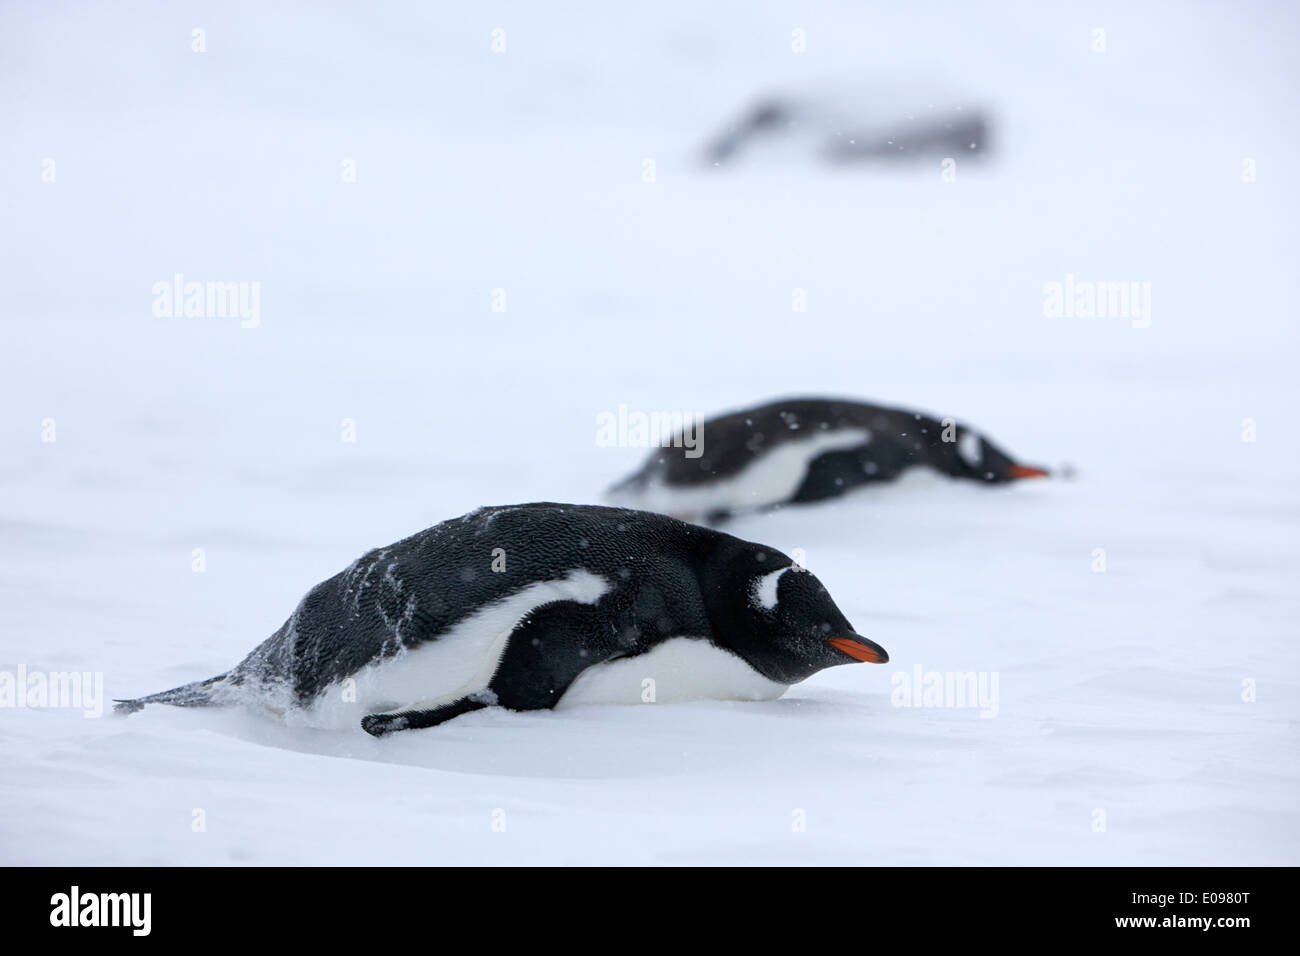 zwei Gentoo Penguins liegend im Schneesturm Blizzard Whalers Bucht Täuschung Insel Antarktis Stockfoto